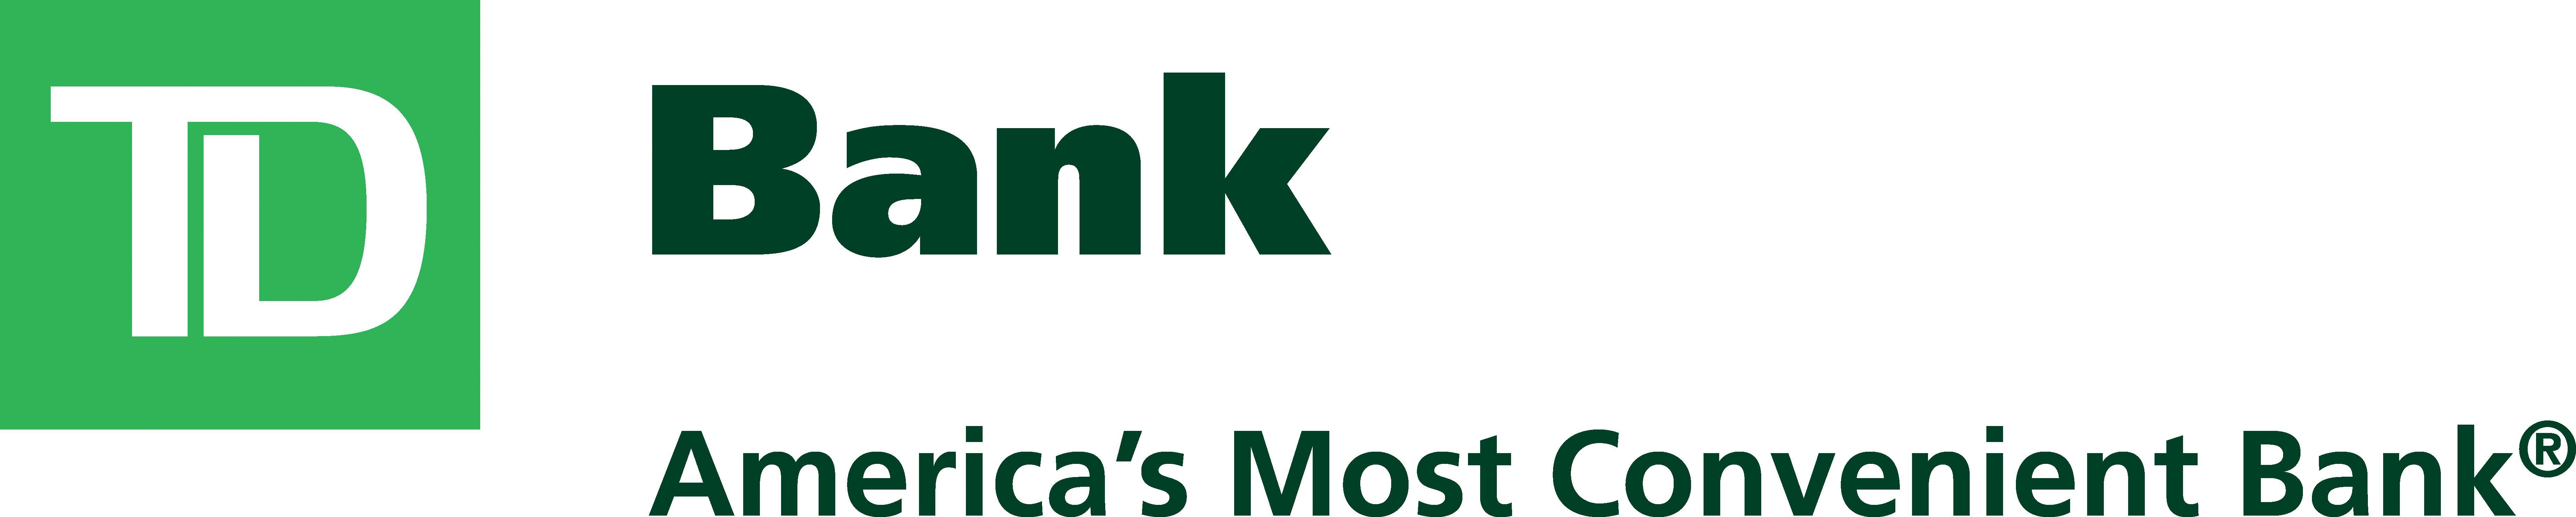 TD Bank Logo - Td bank Logos